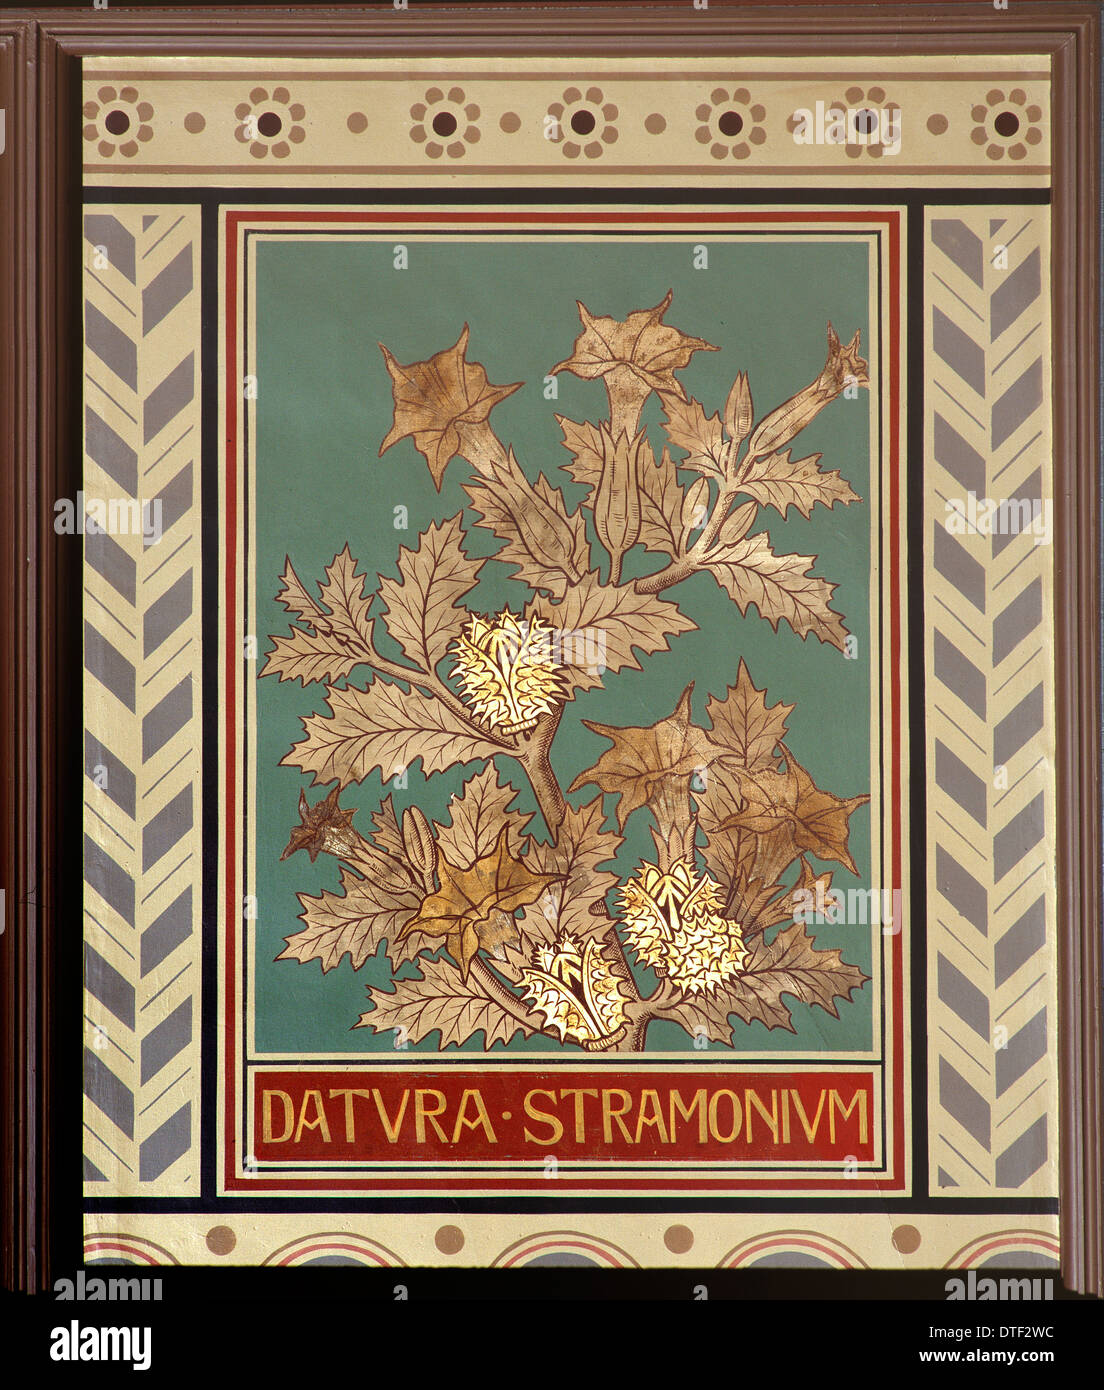 Datura stramonium, jimsonweed Foto Stock